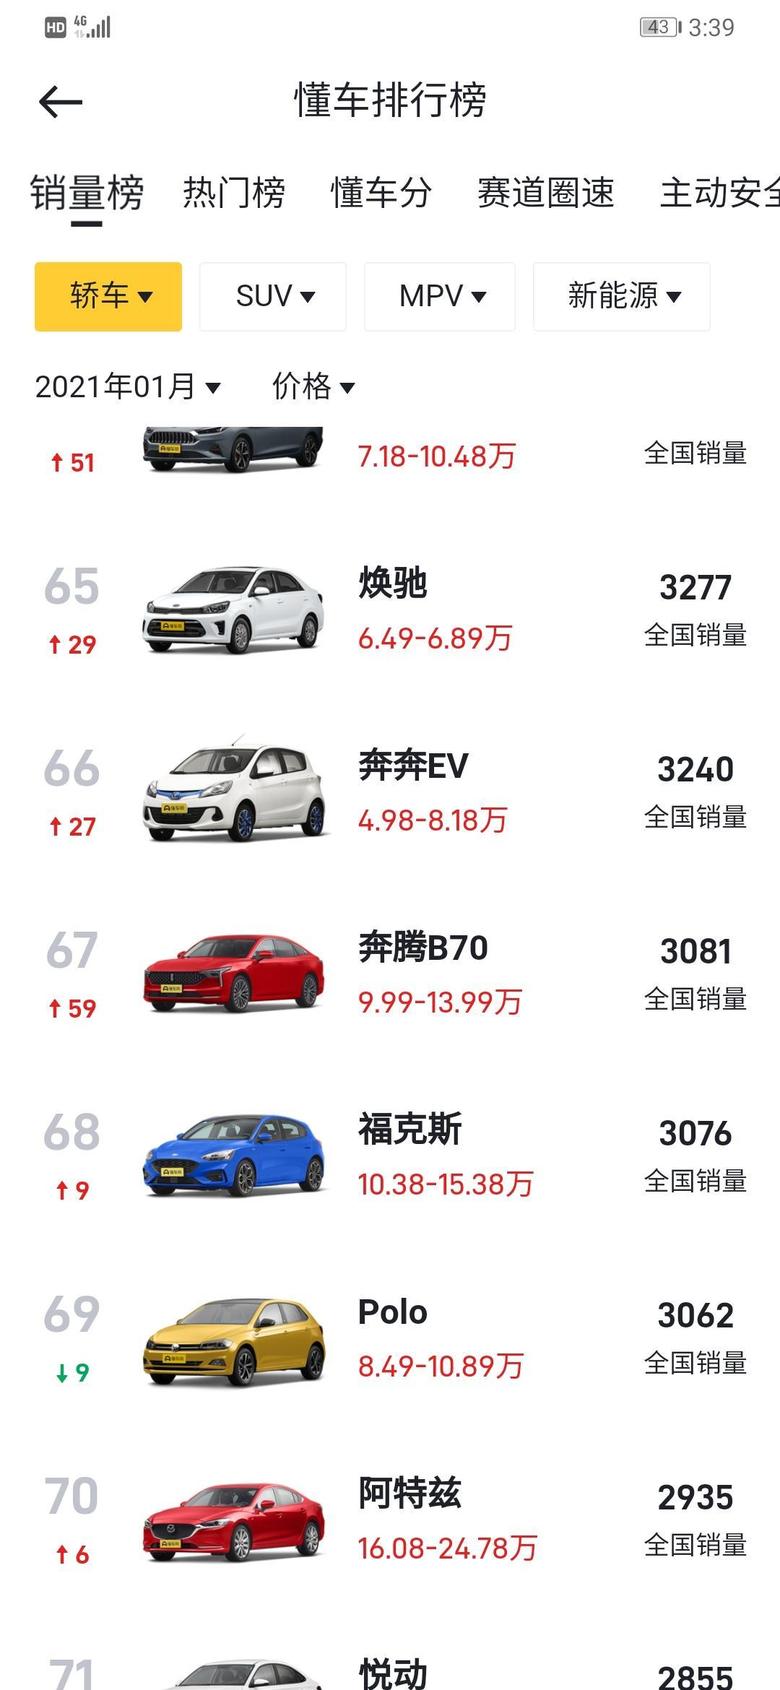 奔腾b70 销量出来了…12月23订的车虽然车还没到。但是看到这销量心里不是那么纠结了。